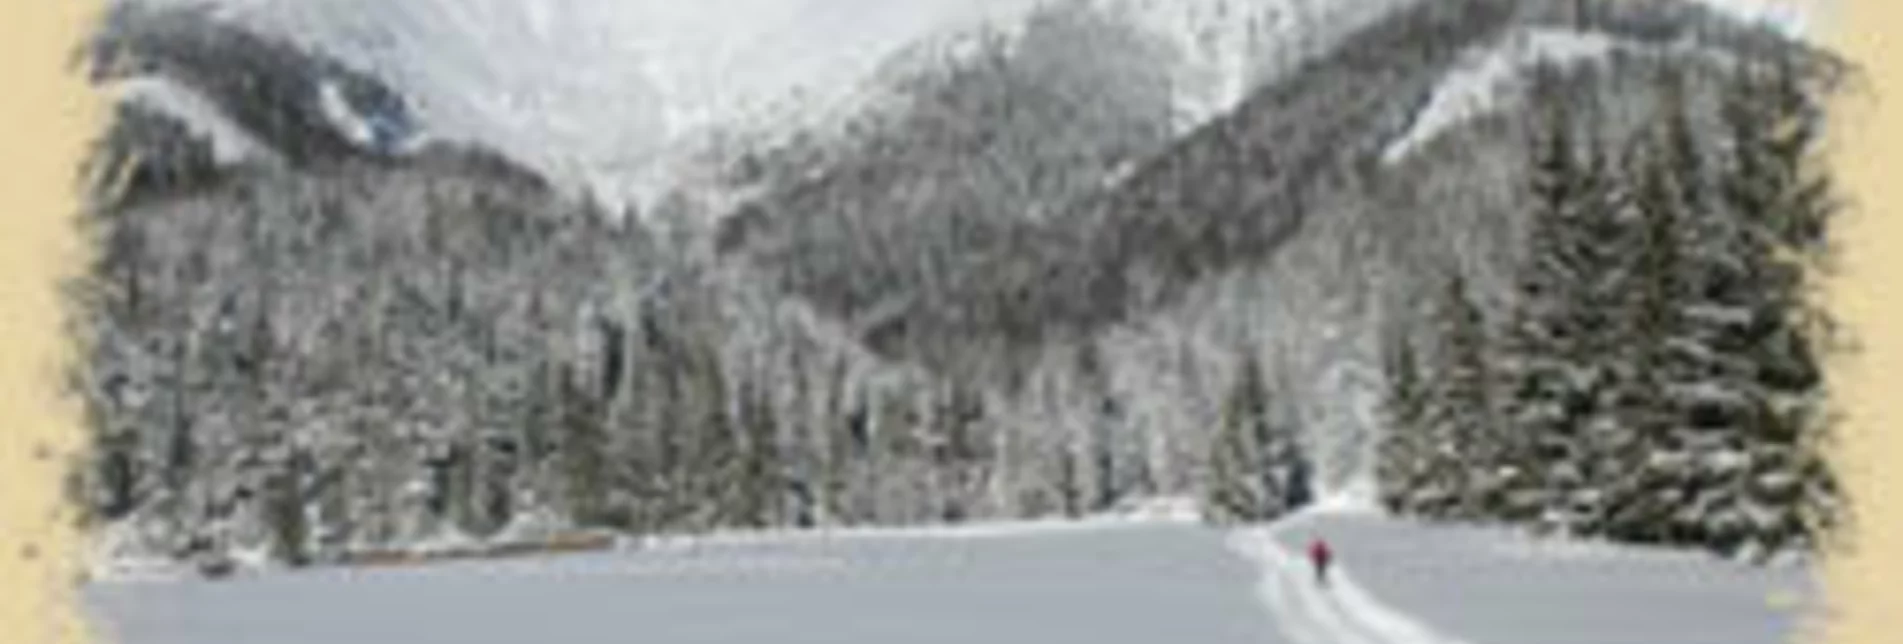 Ski-nordic-classic Zwei-Länder-Loipe Lahnsattel - Touren-Impression #1 | © TV Hochsteiermark